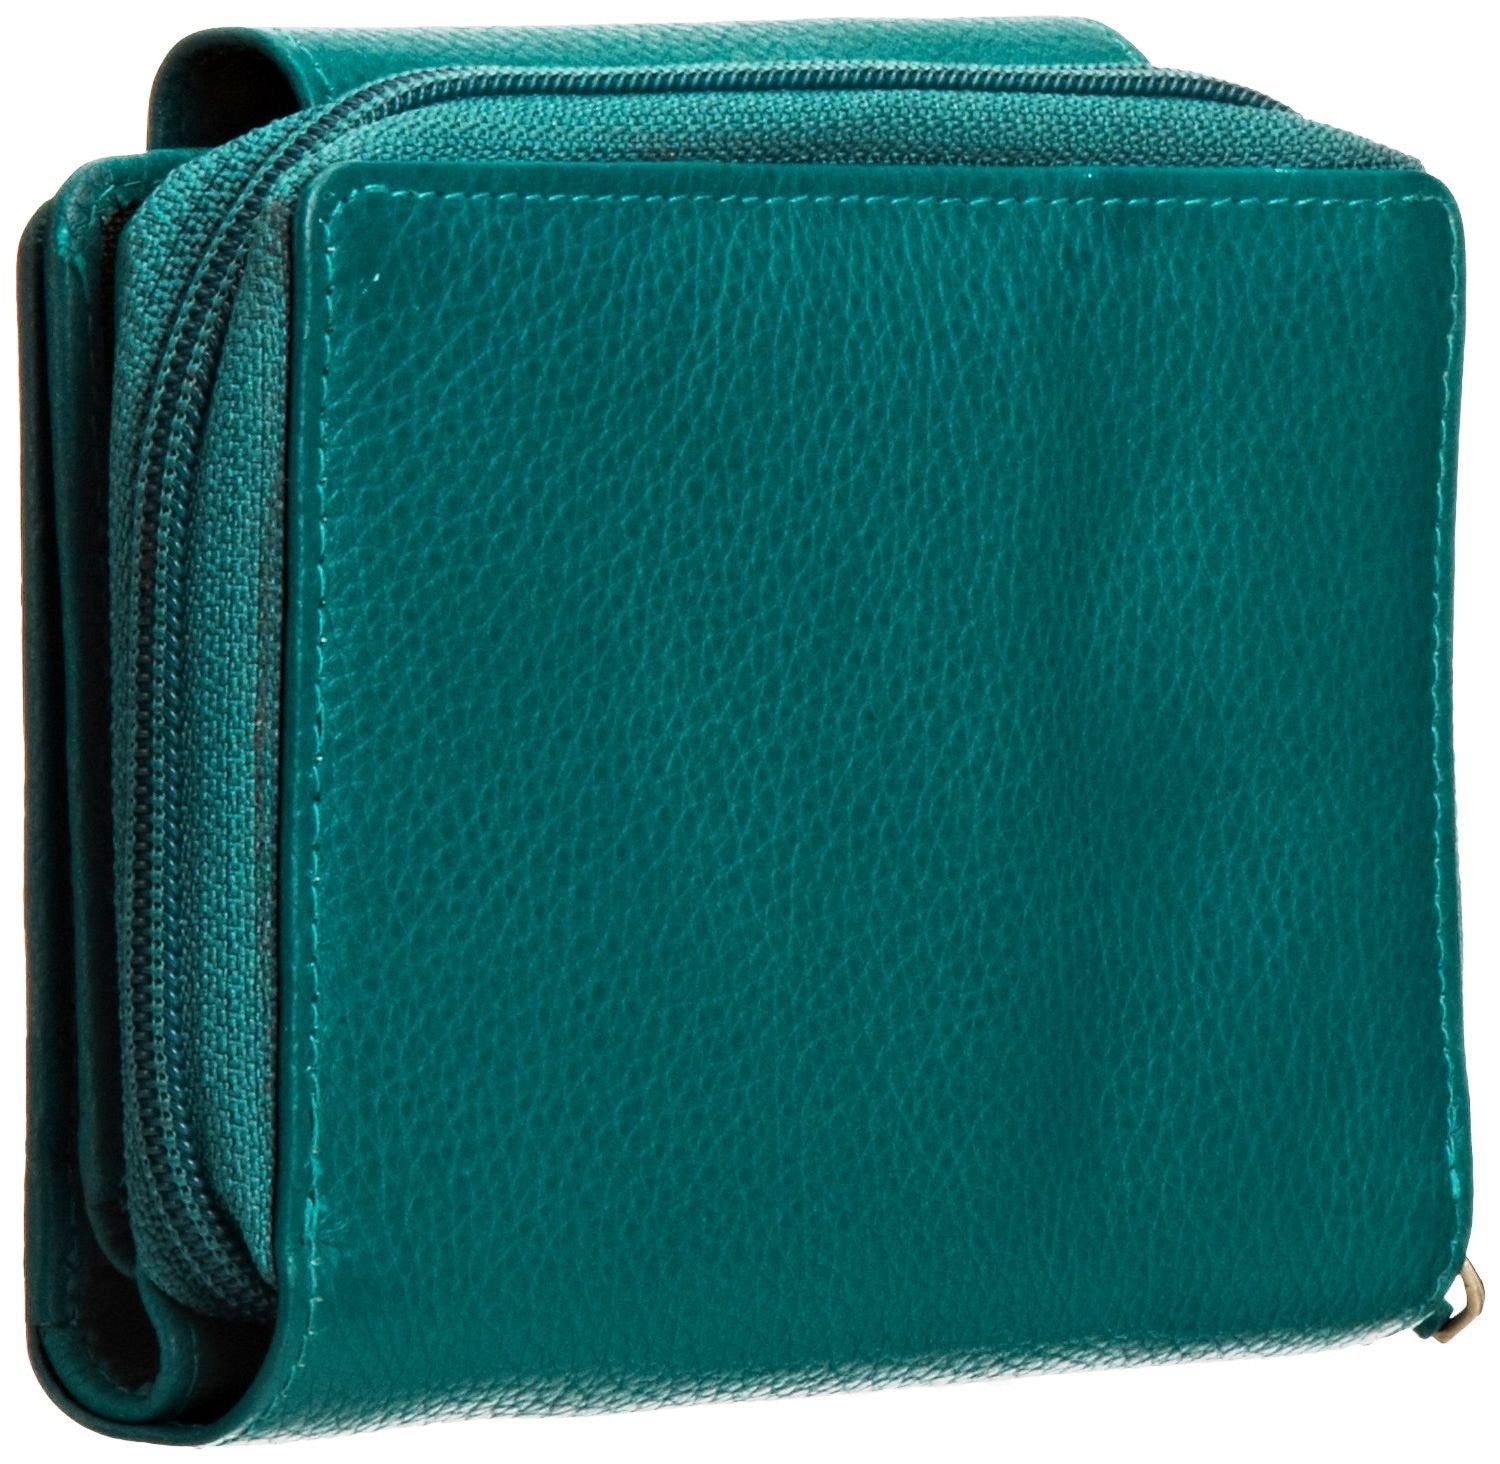 Pratico - women leather flap wallet #LW02 Green